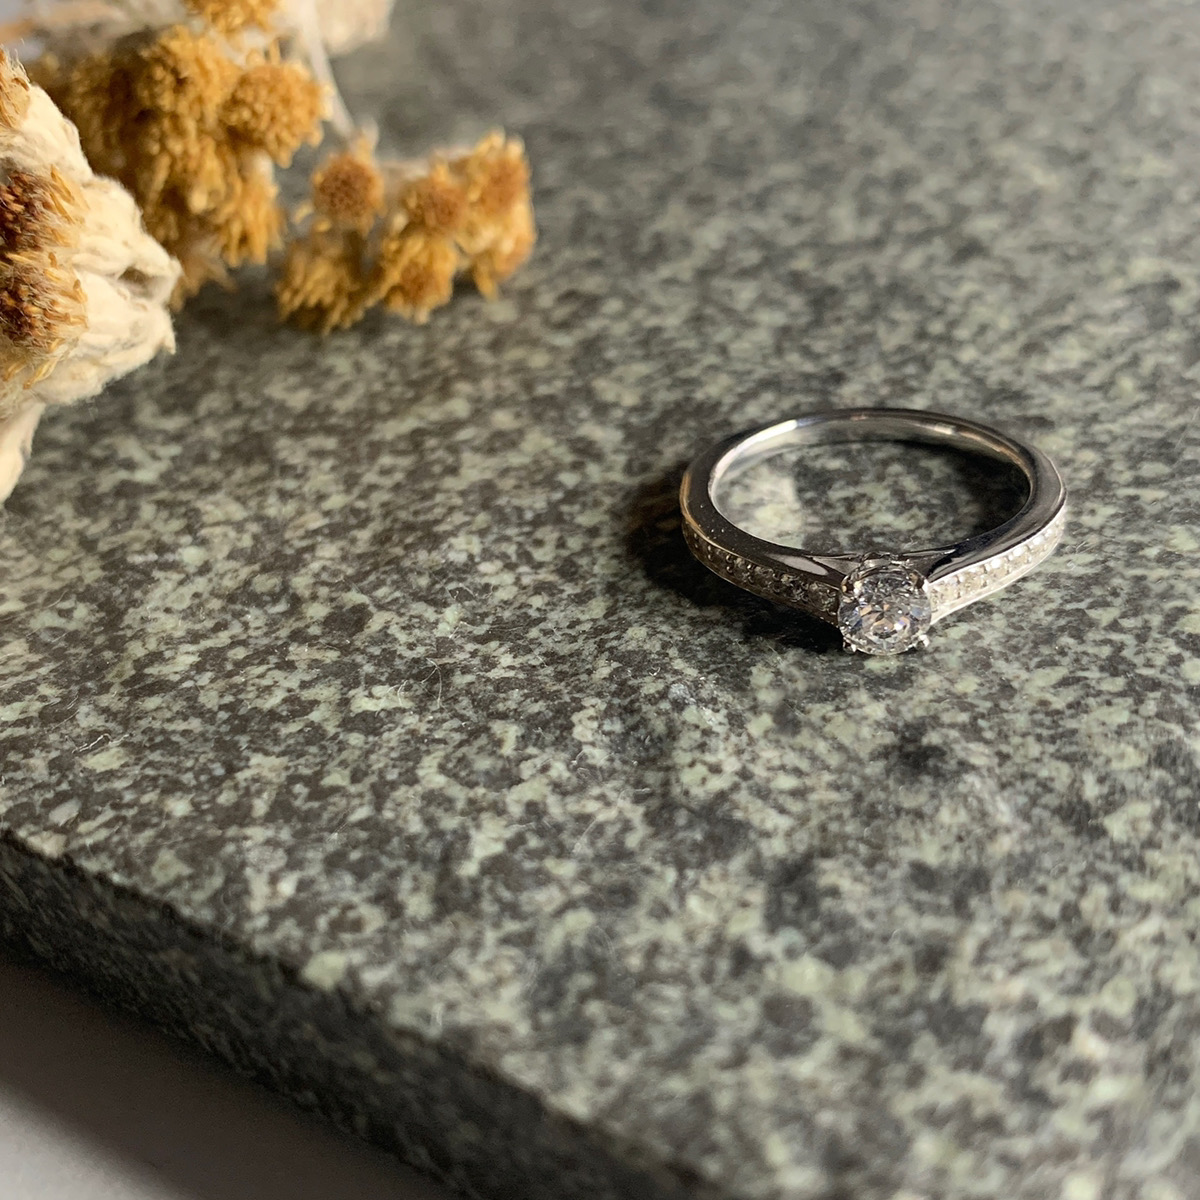 『品質保証』PT 950プラチナクラシック指輪1.0 ctダイヤモンドリング5